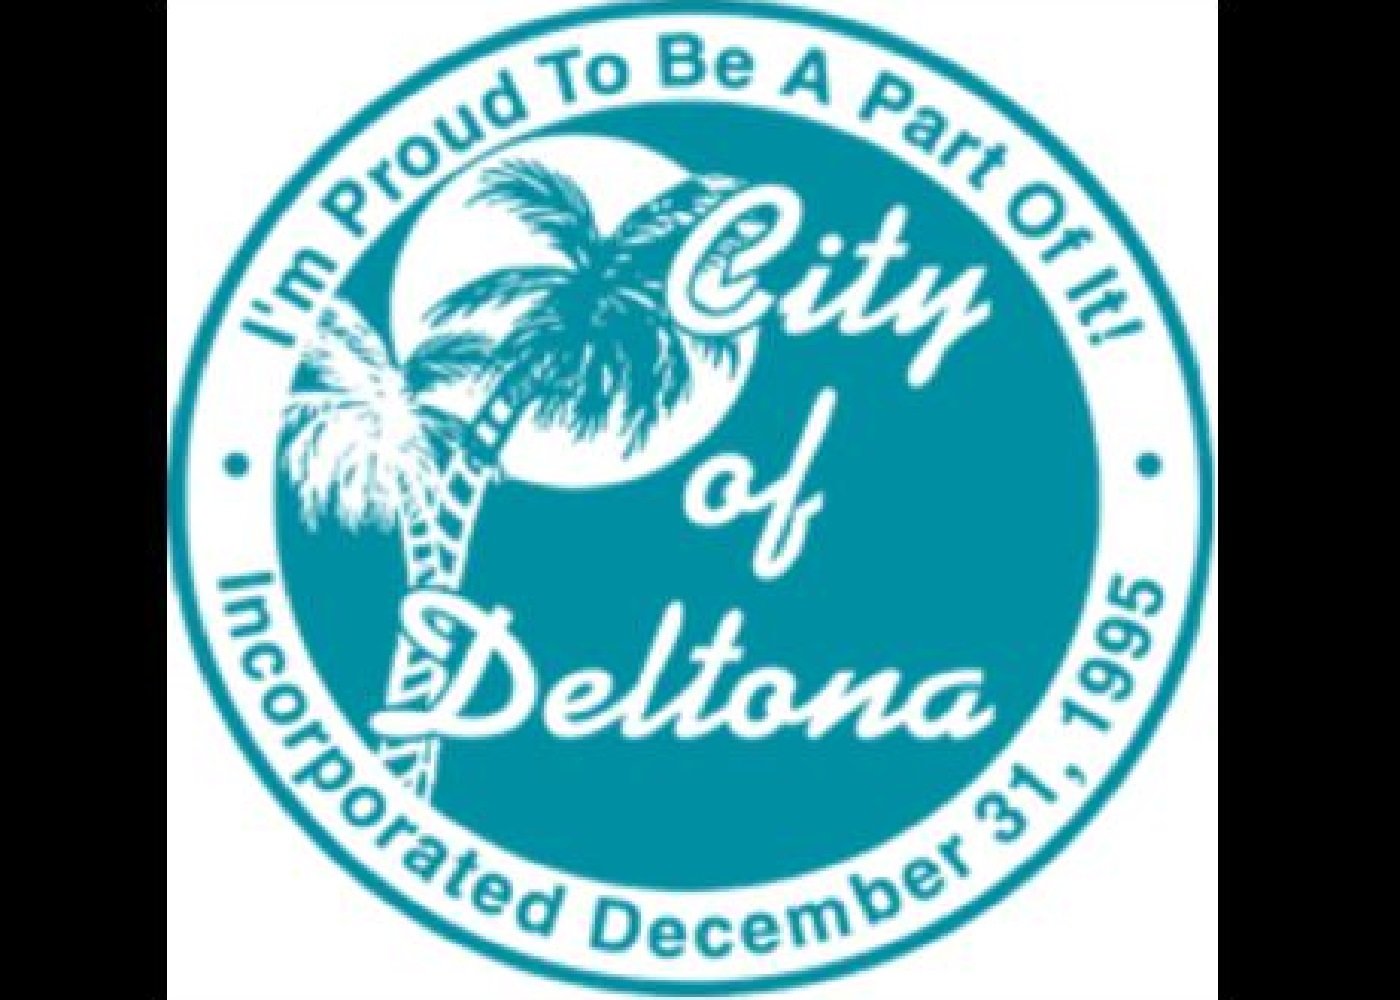 Deltona, FL - wide 4